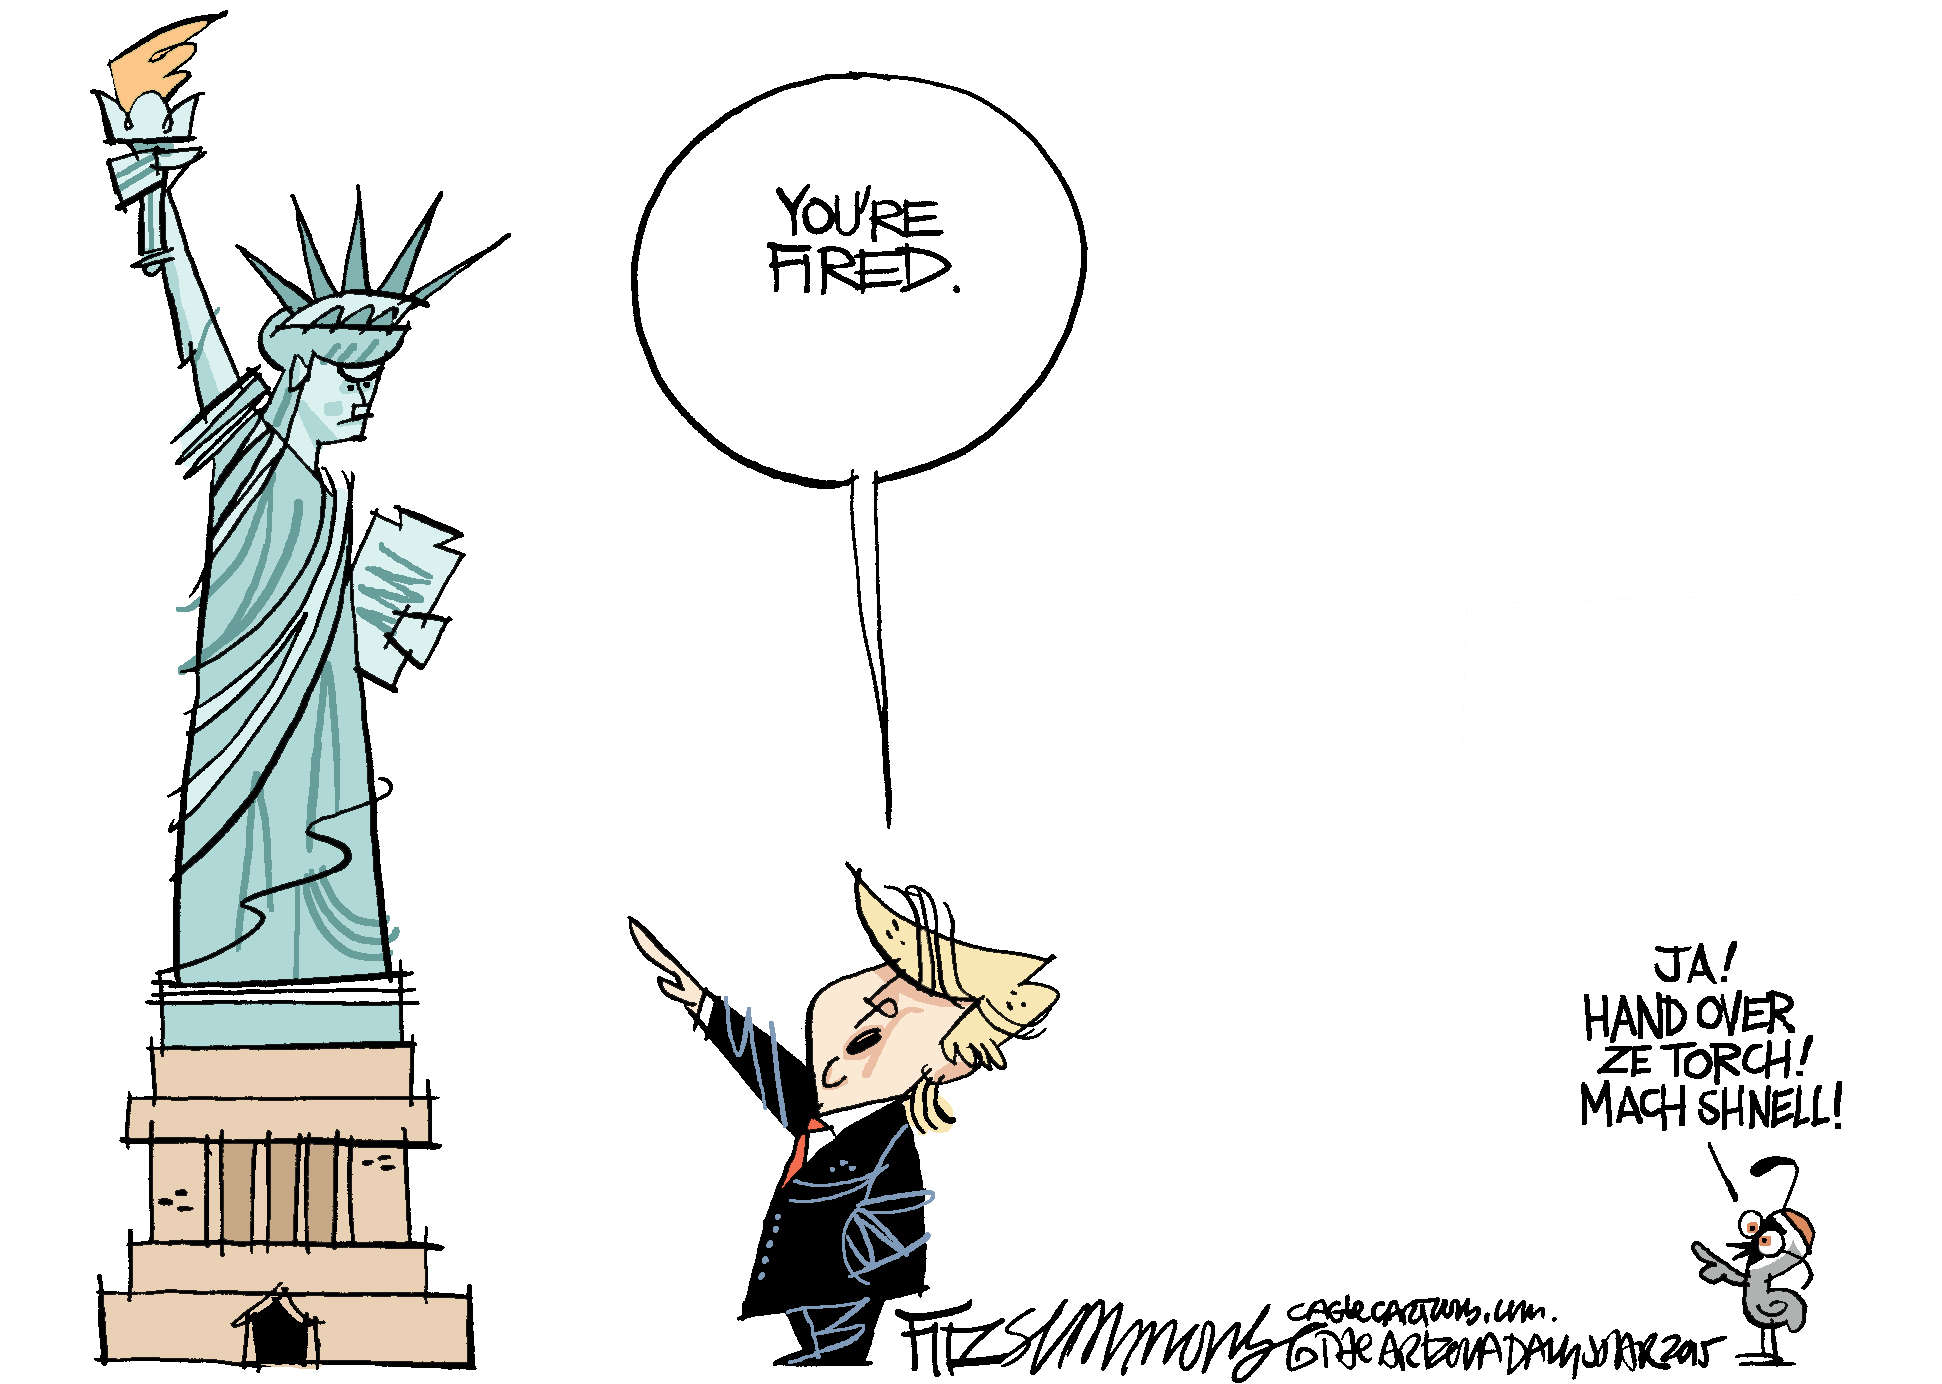 Trump fires Statue of Liberty